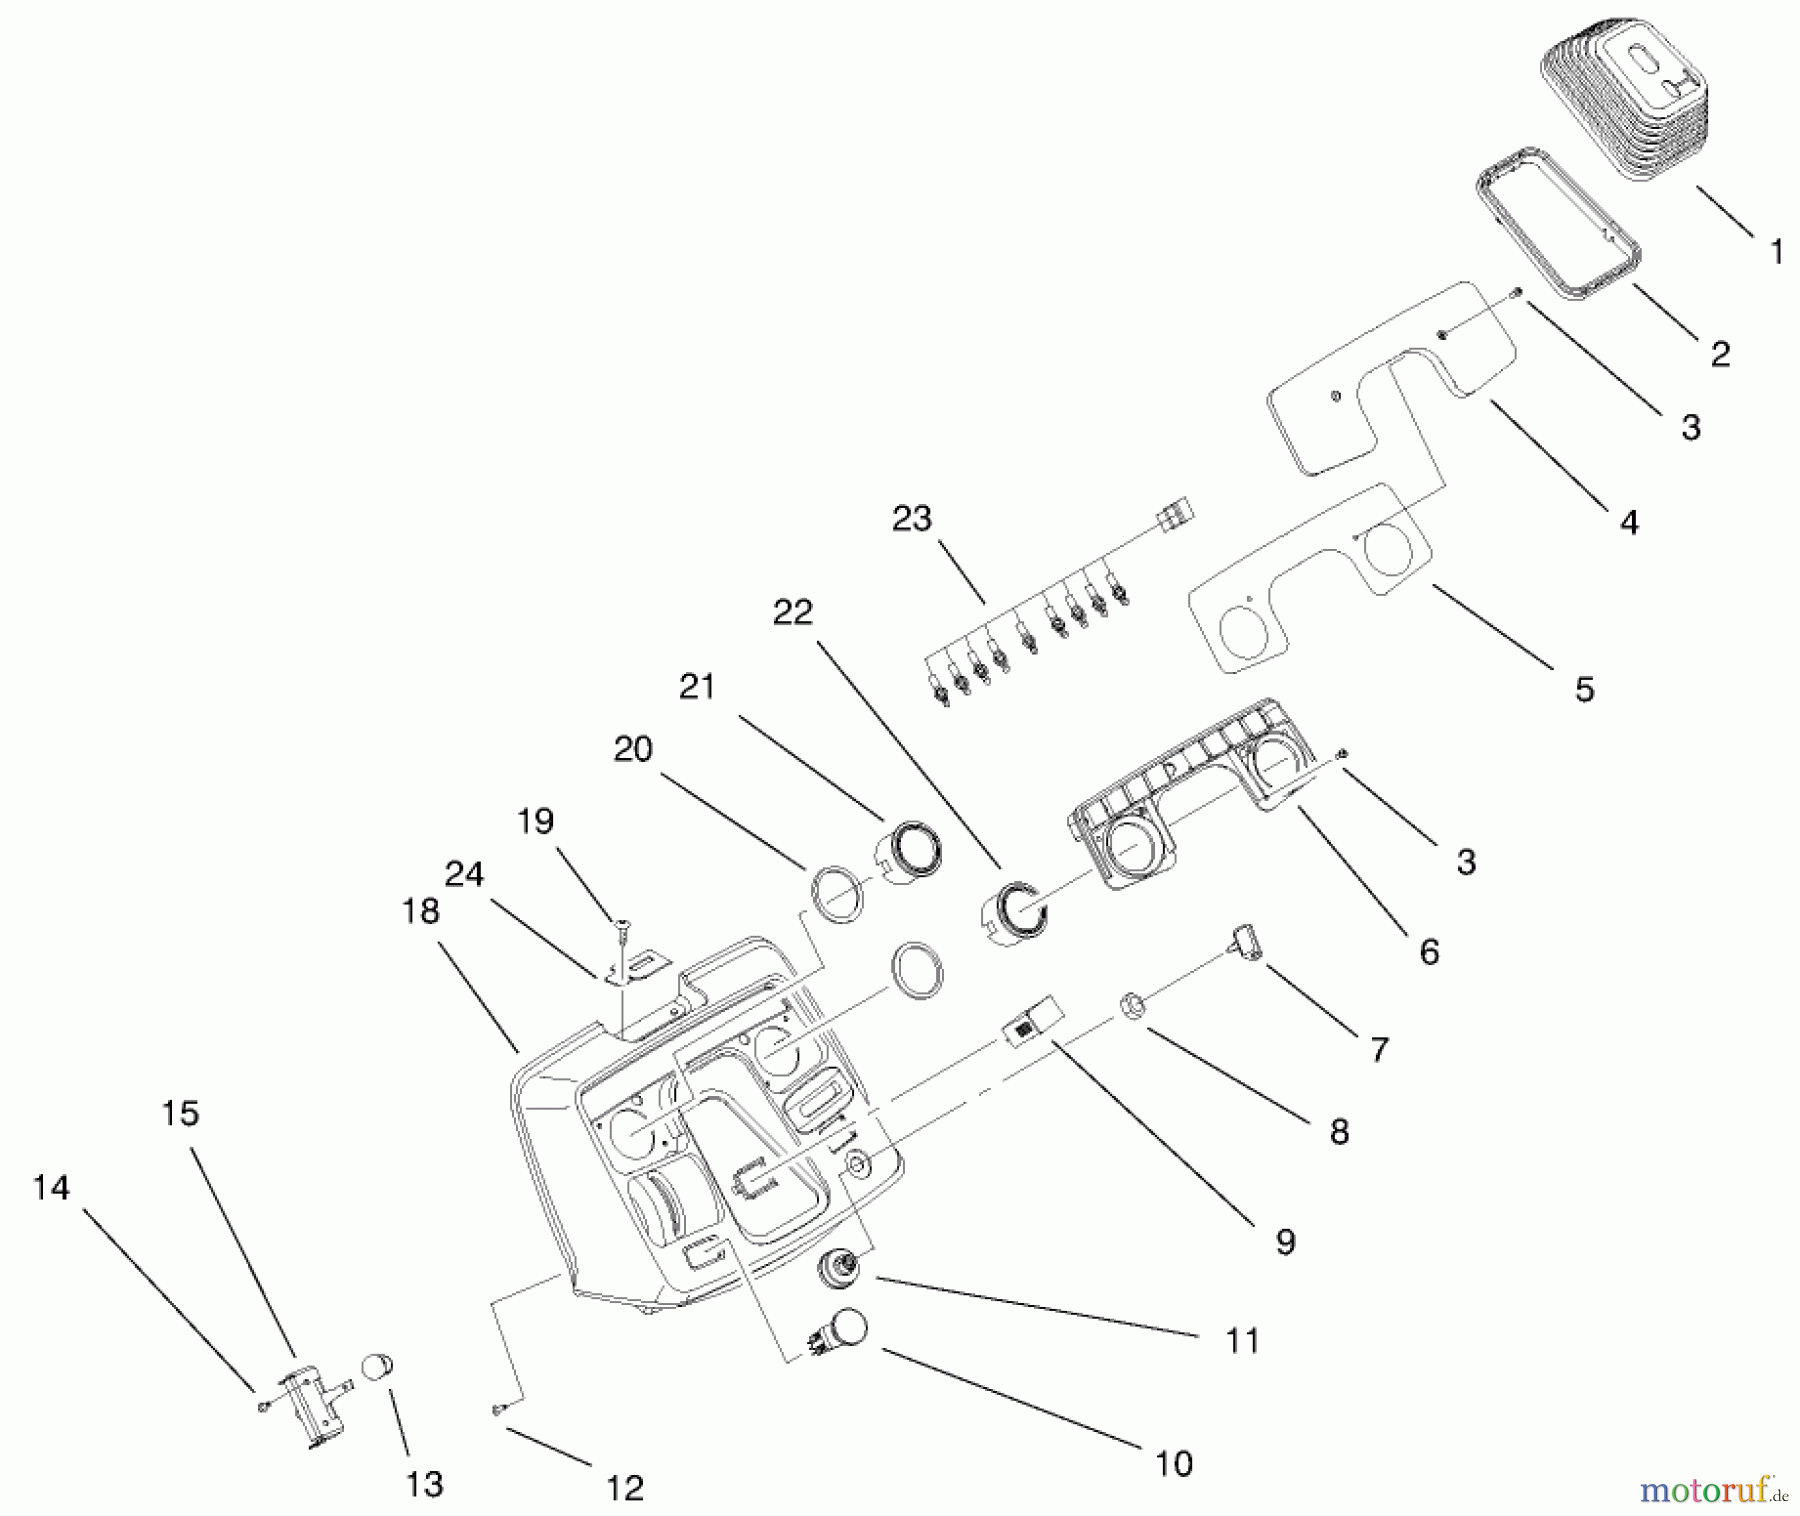  Toro Neu Mowers, Lawn & Garden Tractor Seite 1 73551 (523Dxi) - Toro 523Dxi Garden Tractor, 1998 (8900001-8999999) DASH ASSEMBLY